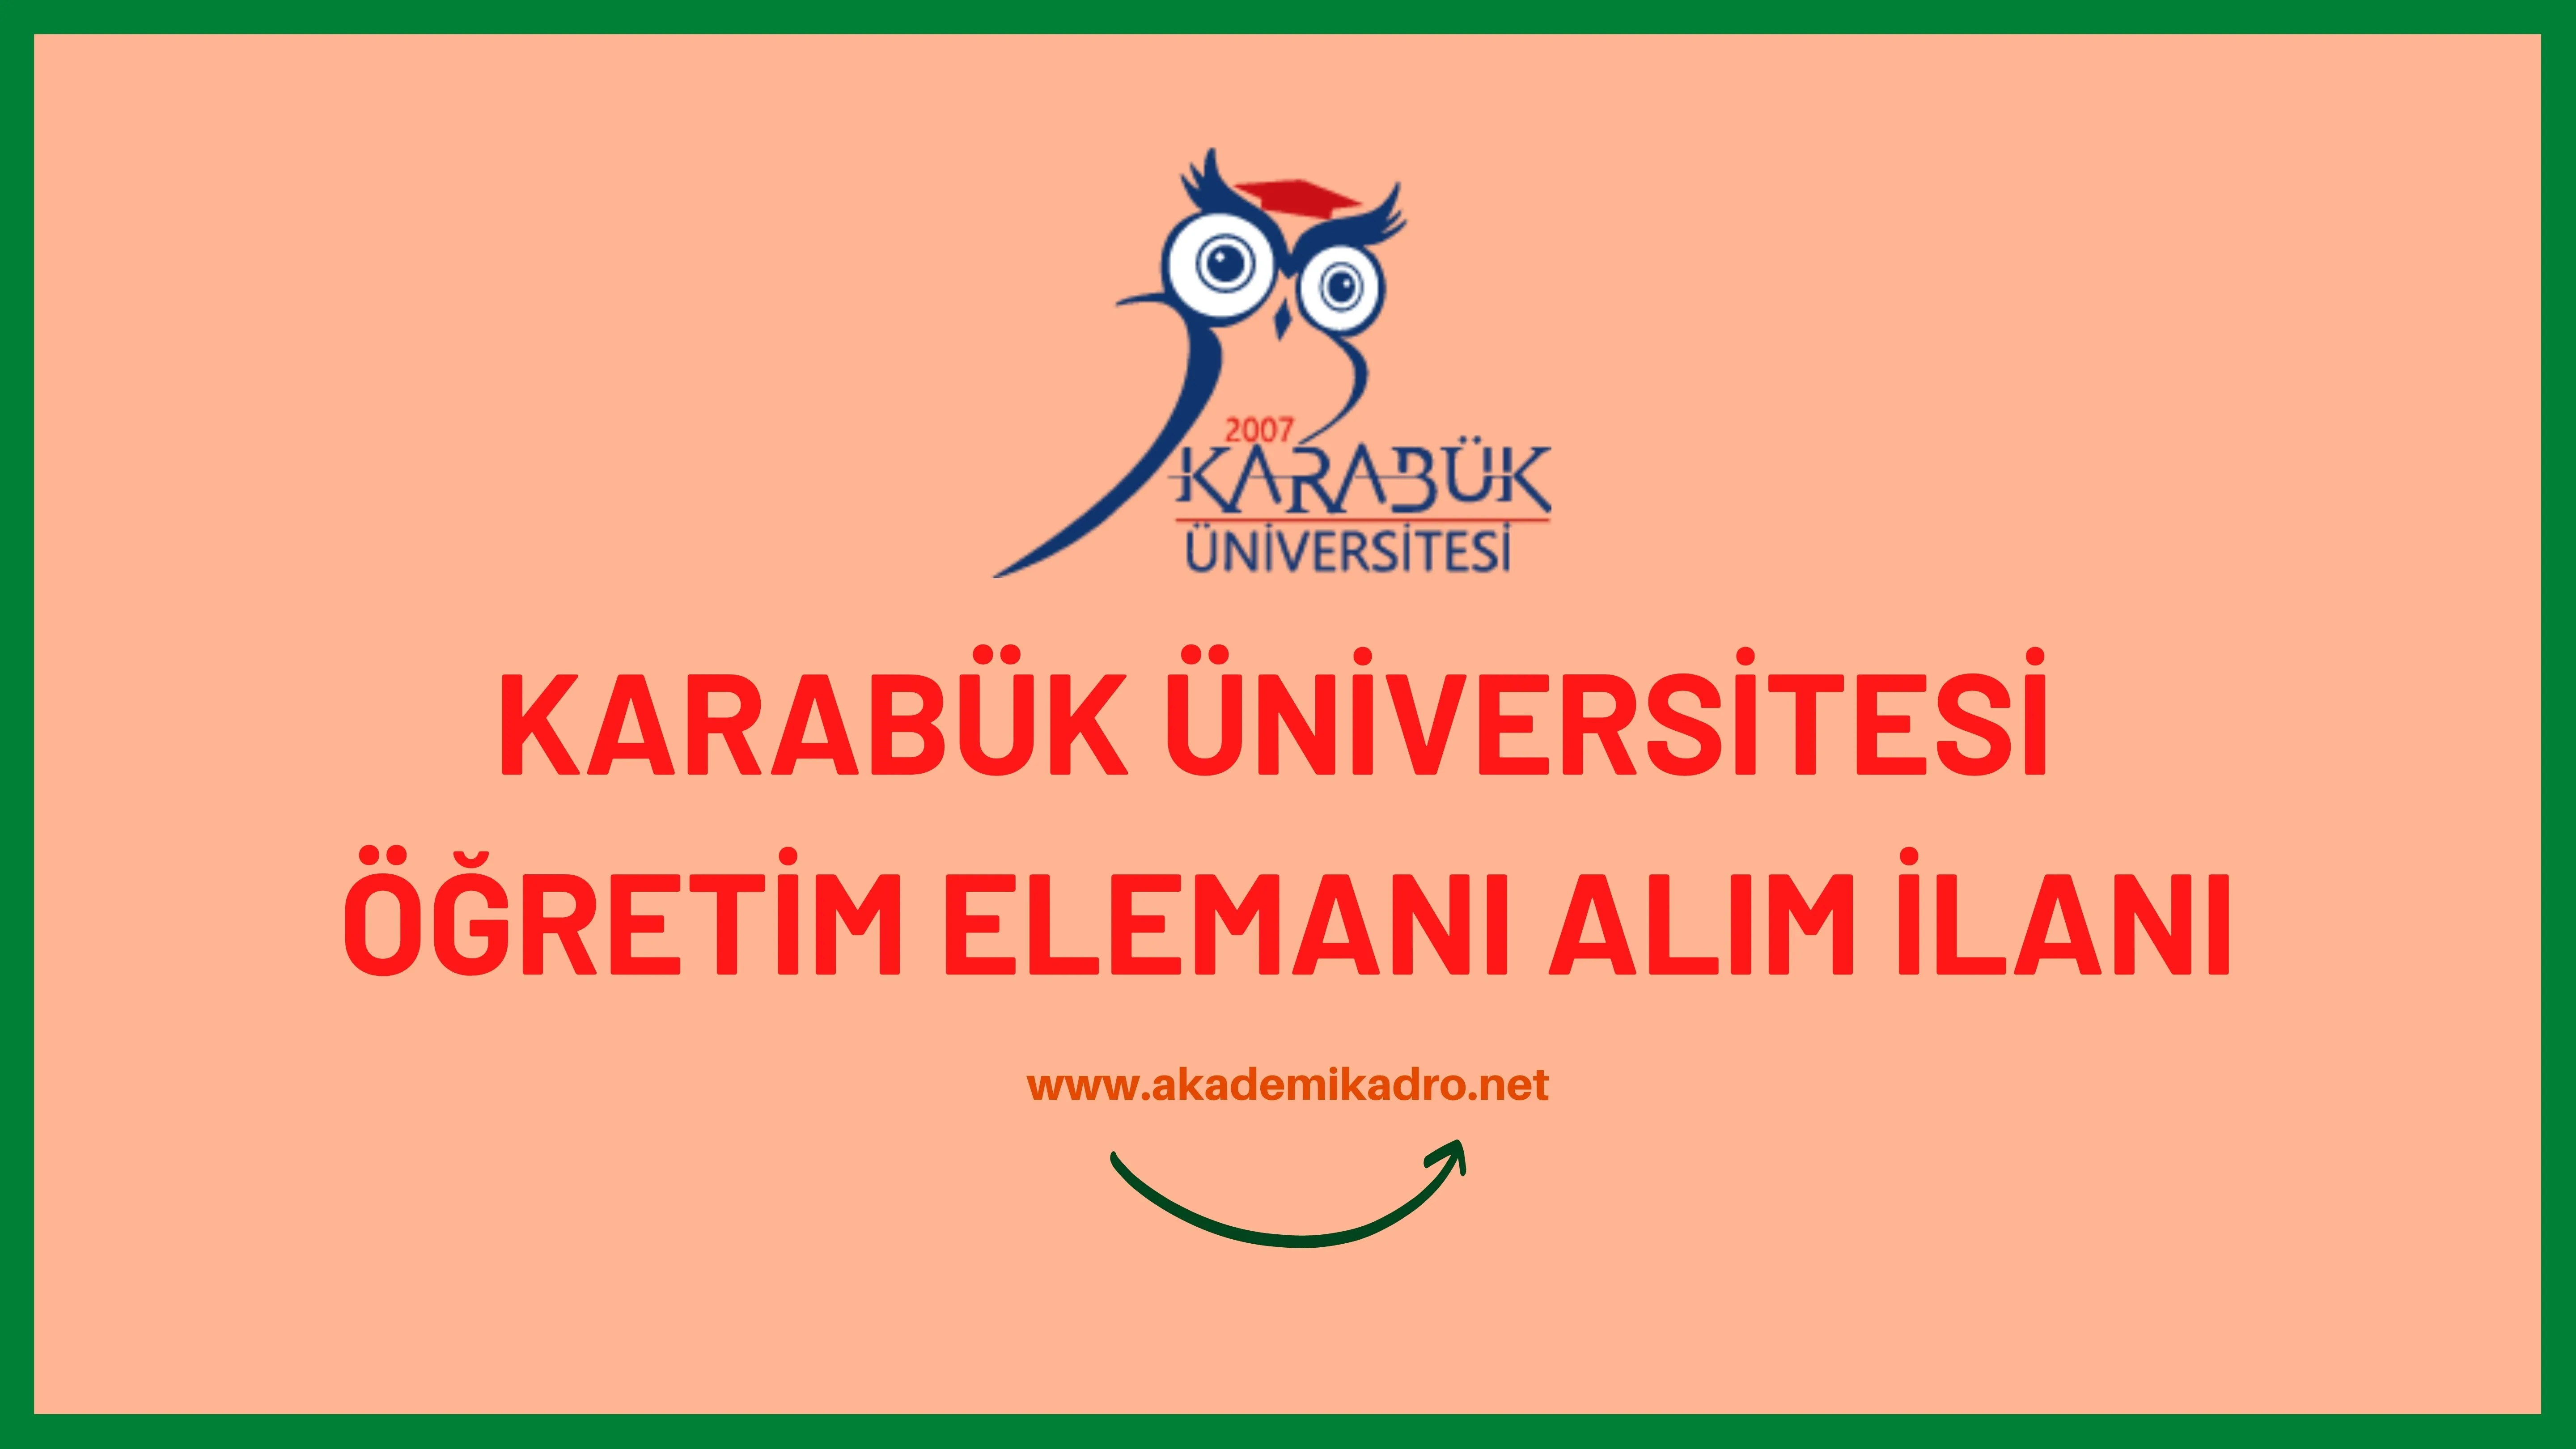 Karabük Üniversitesi 16 akademik personel alacak.